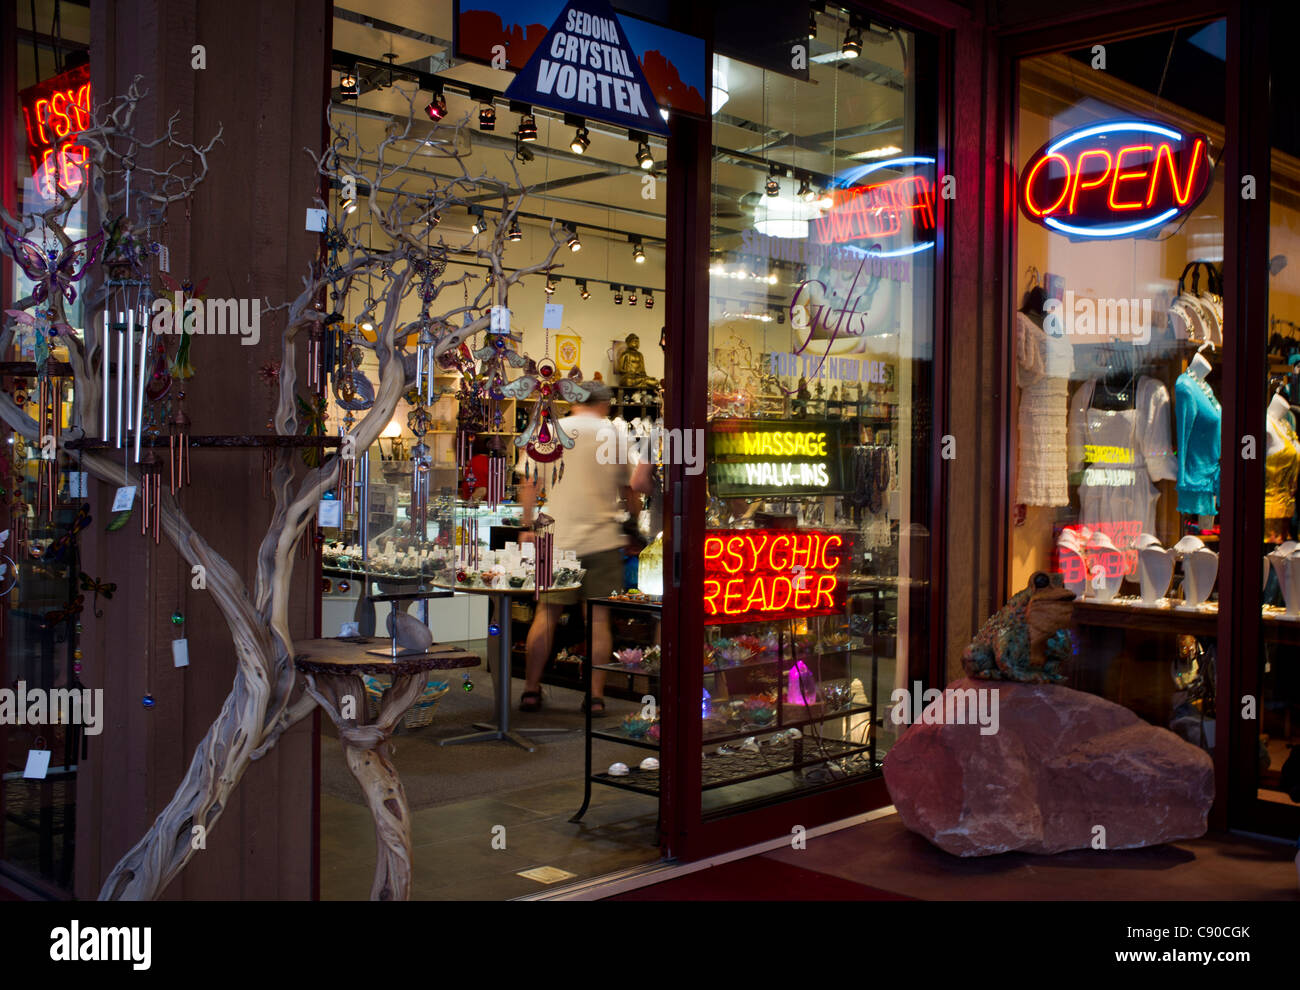 Sedona Arizona, Crystal Vortex Shop Schaufenster mit Zeichen und eine psychische Leser öffnen Stockfoto